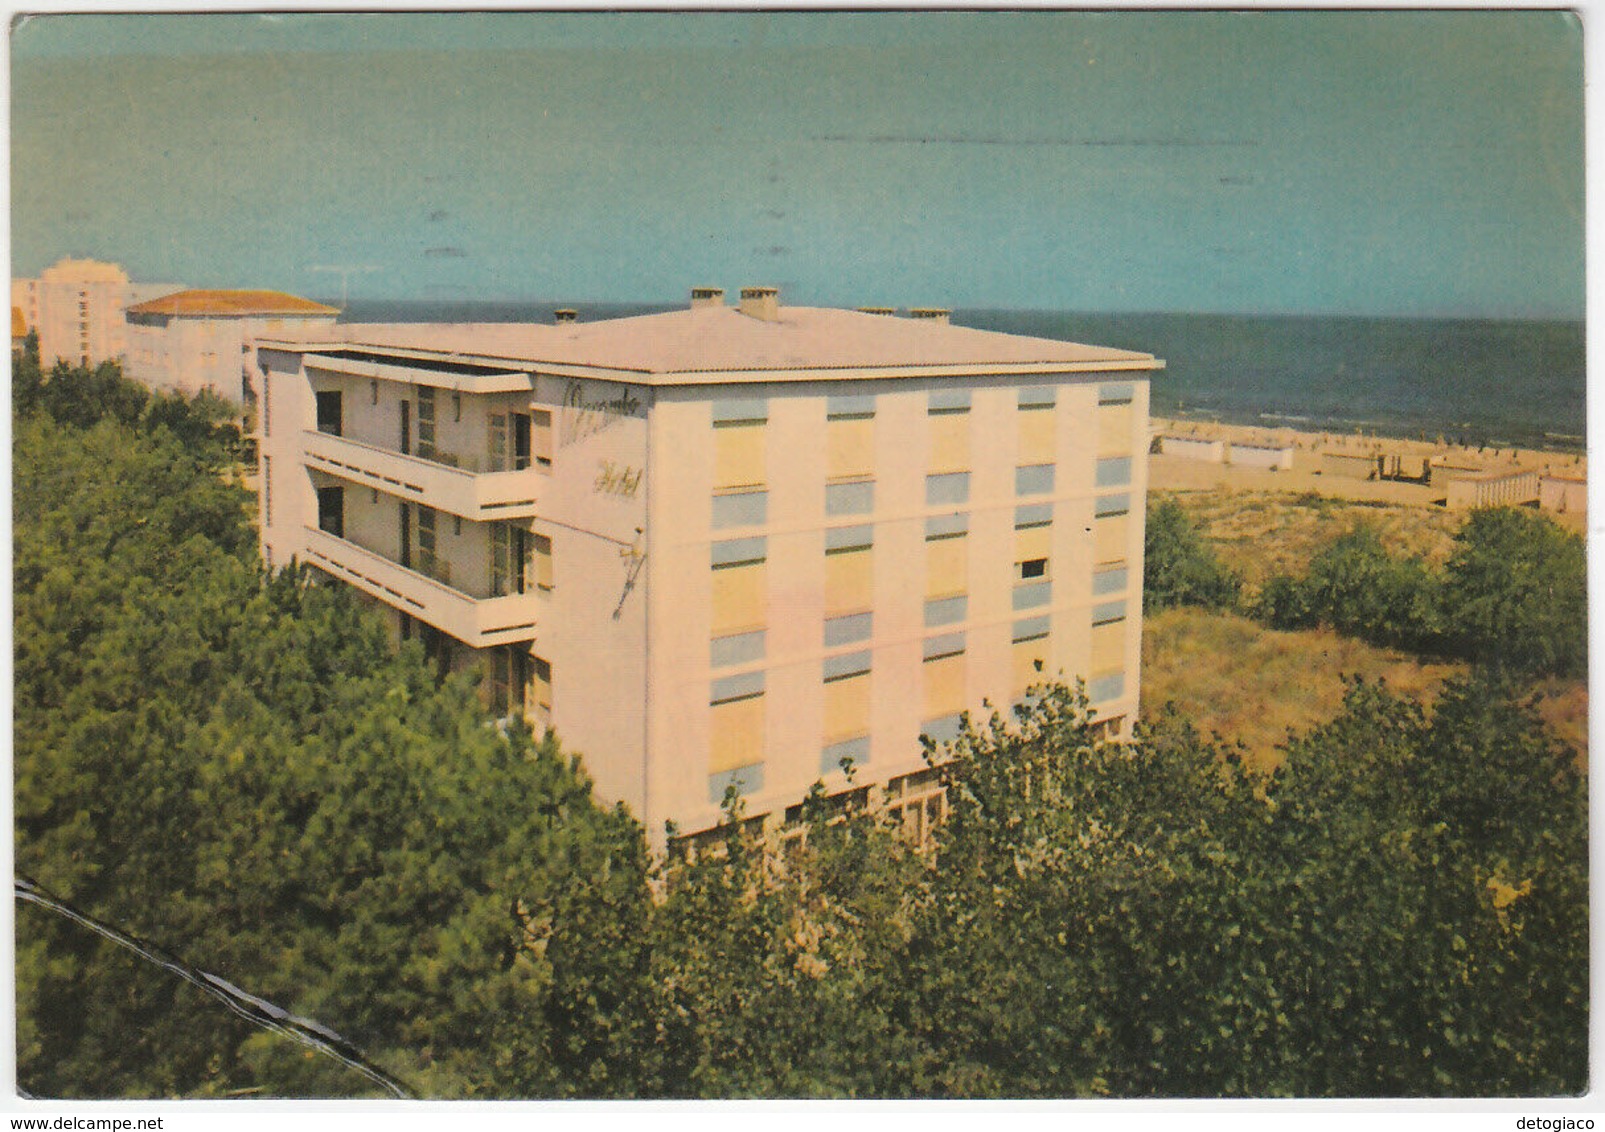 MILANO MARITTIMA - RAVENNA - HOTEL MOCAMBO - VIAGG. 1970 -33109- - Ravenna